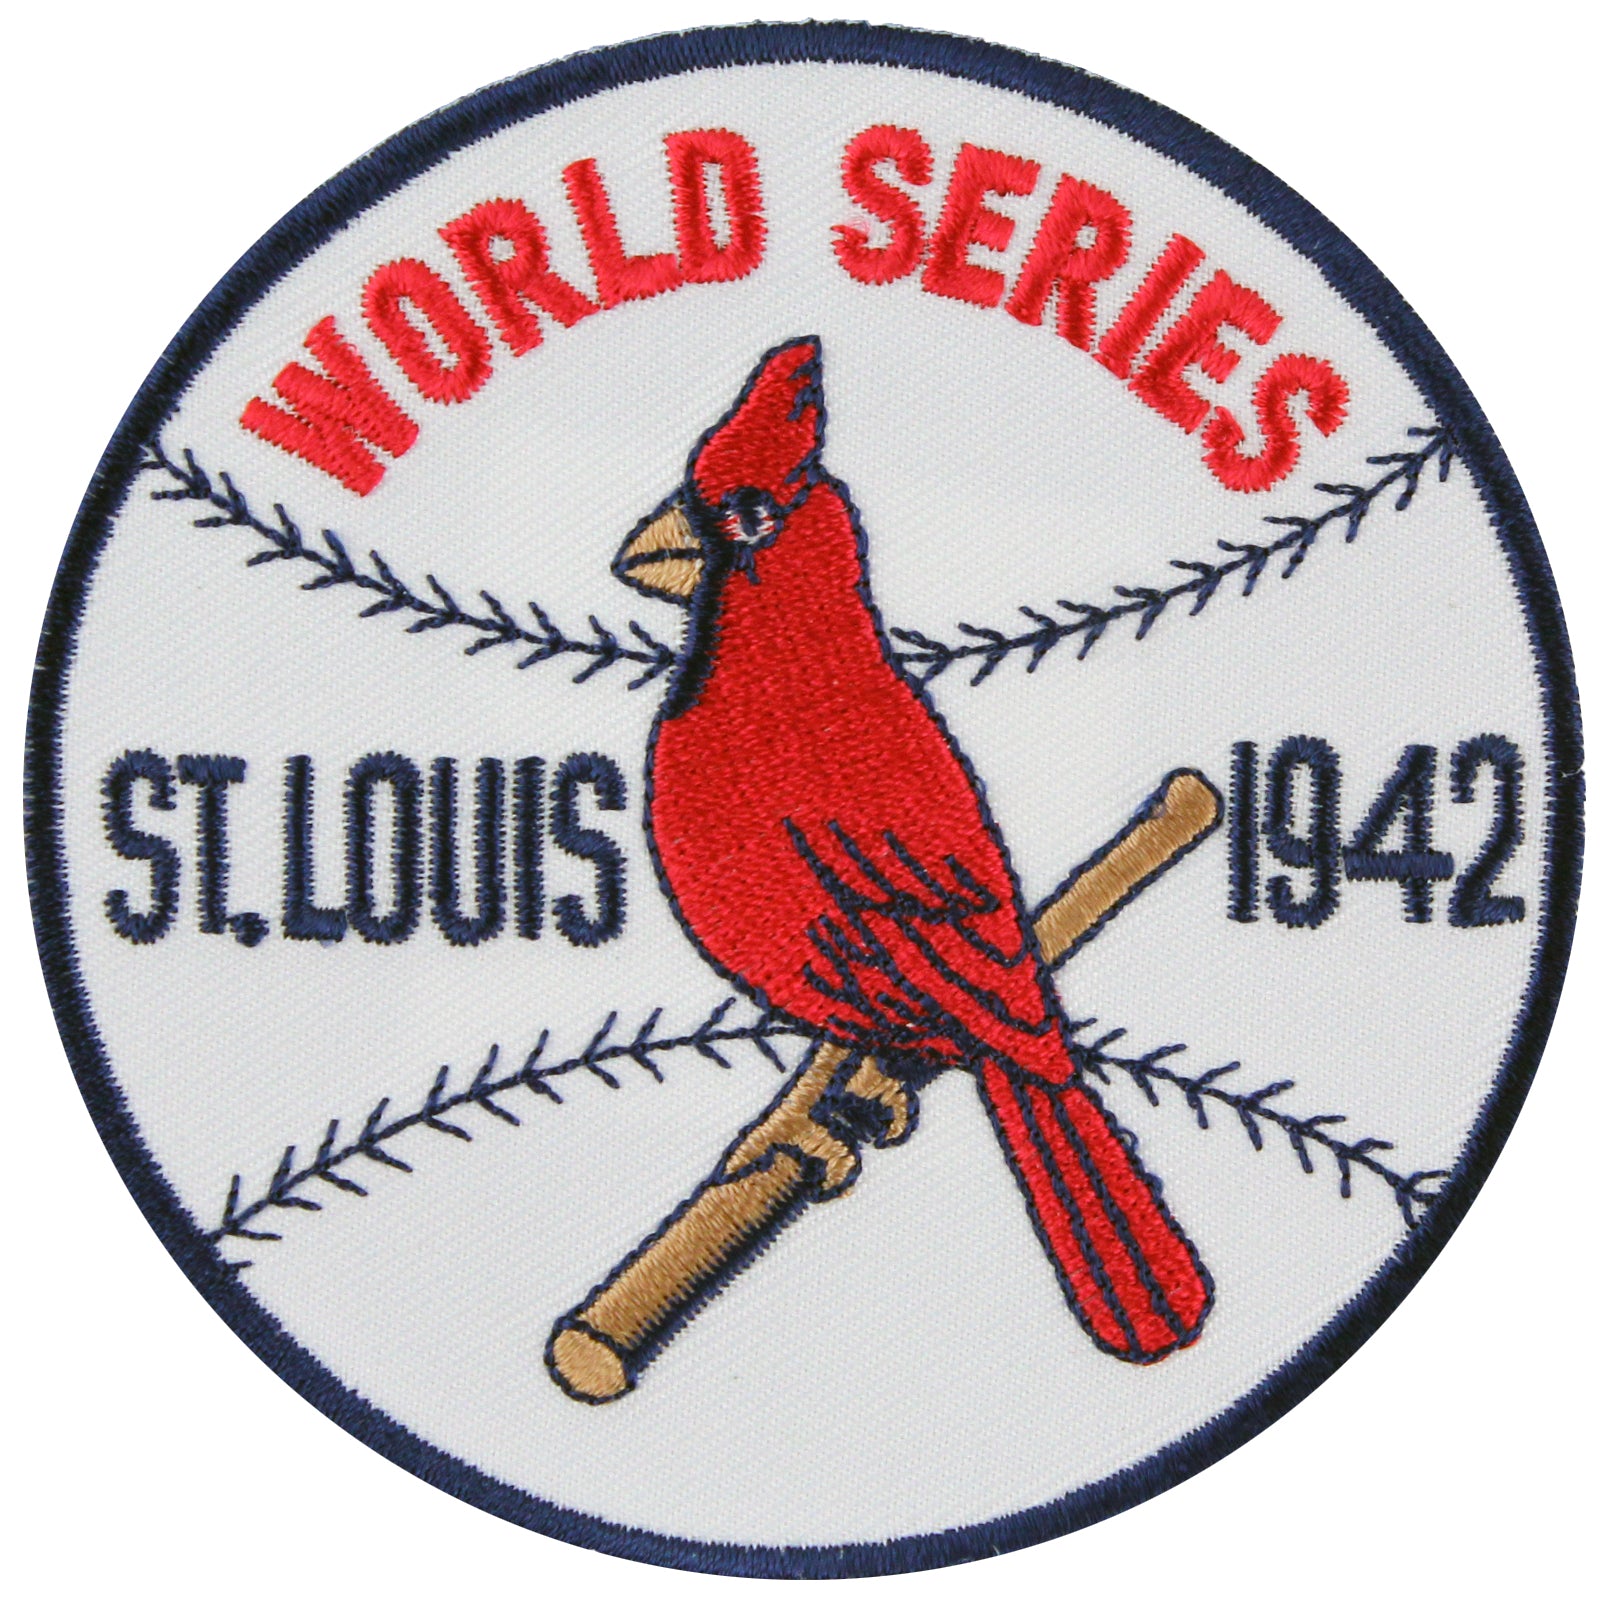 St. Louis Cardinals Uniforms & Logos 